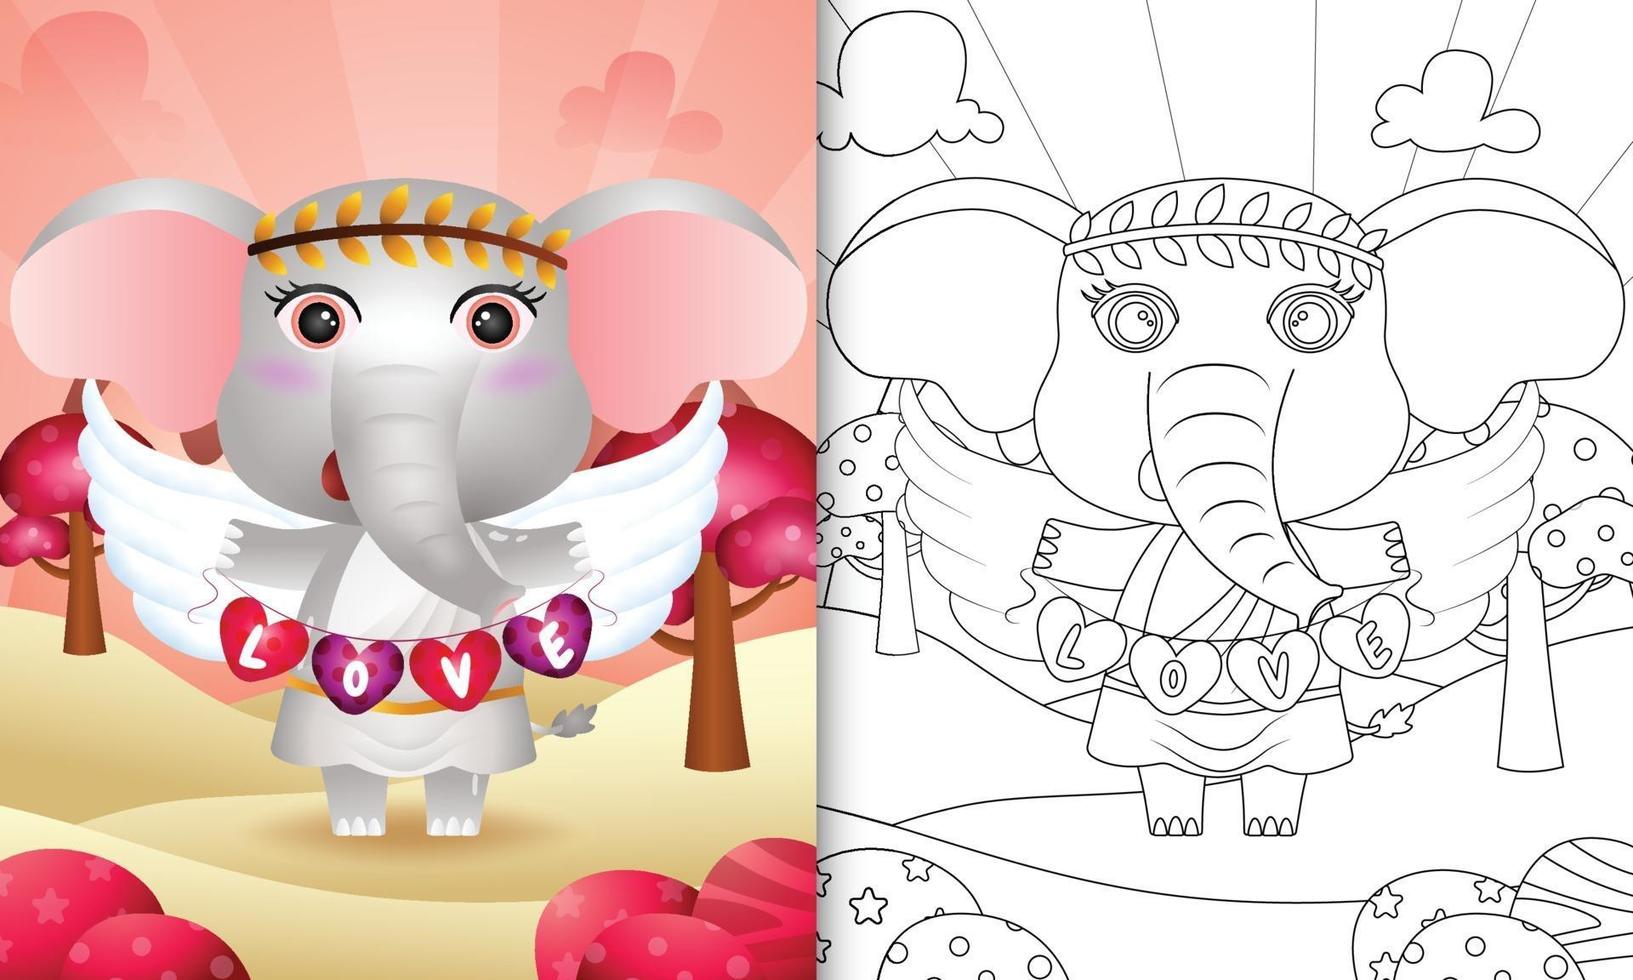 kleurboek voor kinderen met een schattige olifantenengel met cupidokostuum met hartvormige vlag vector